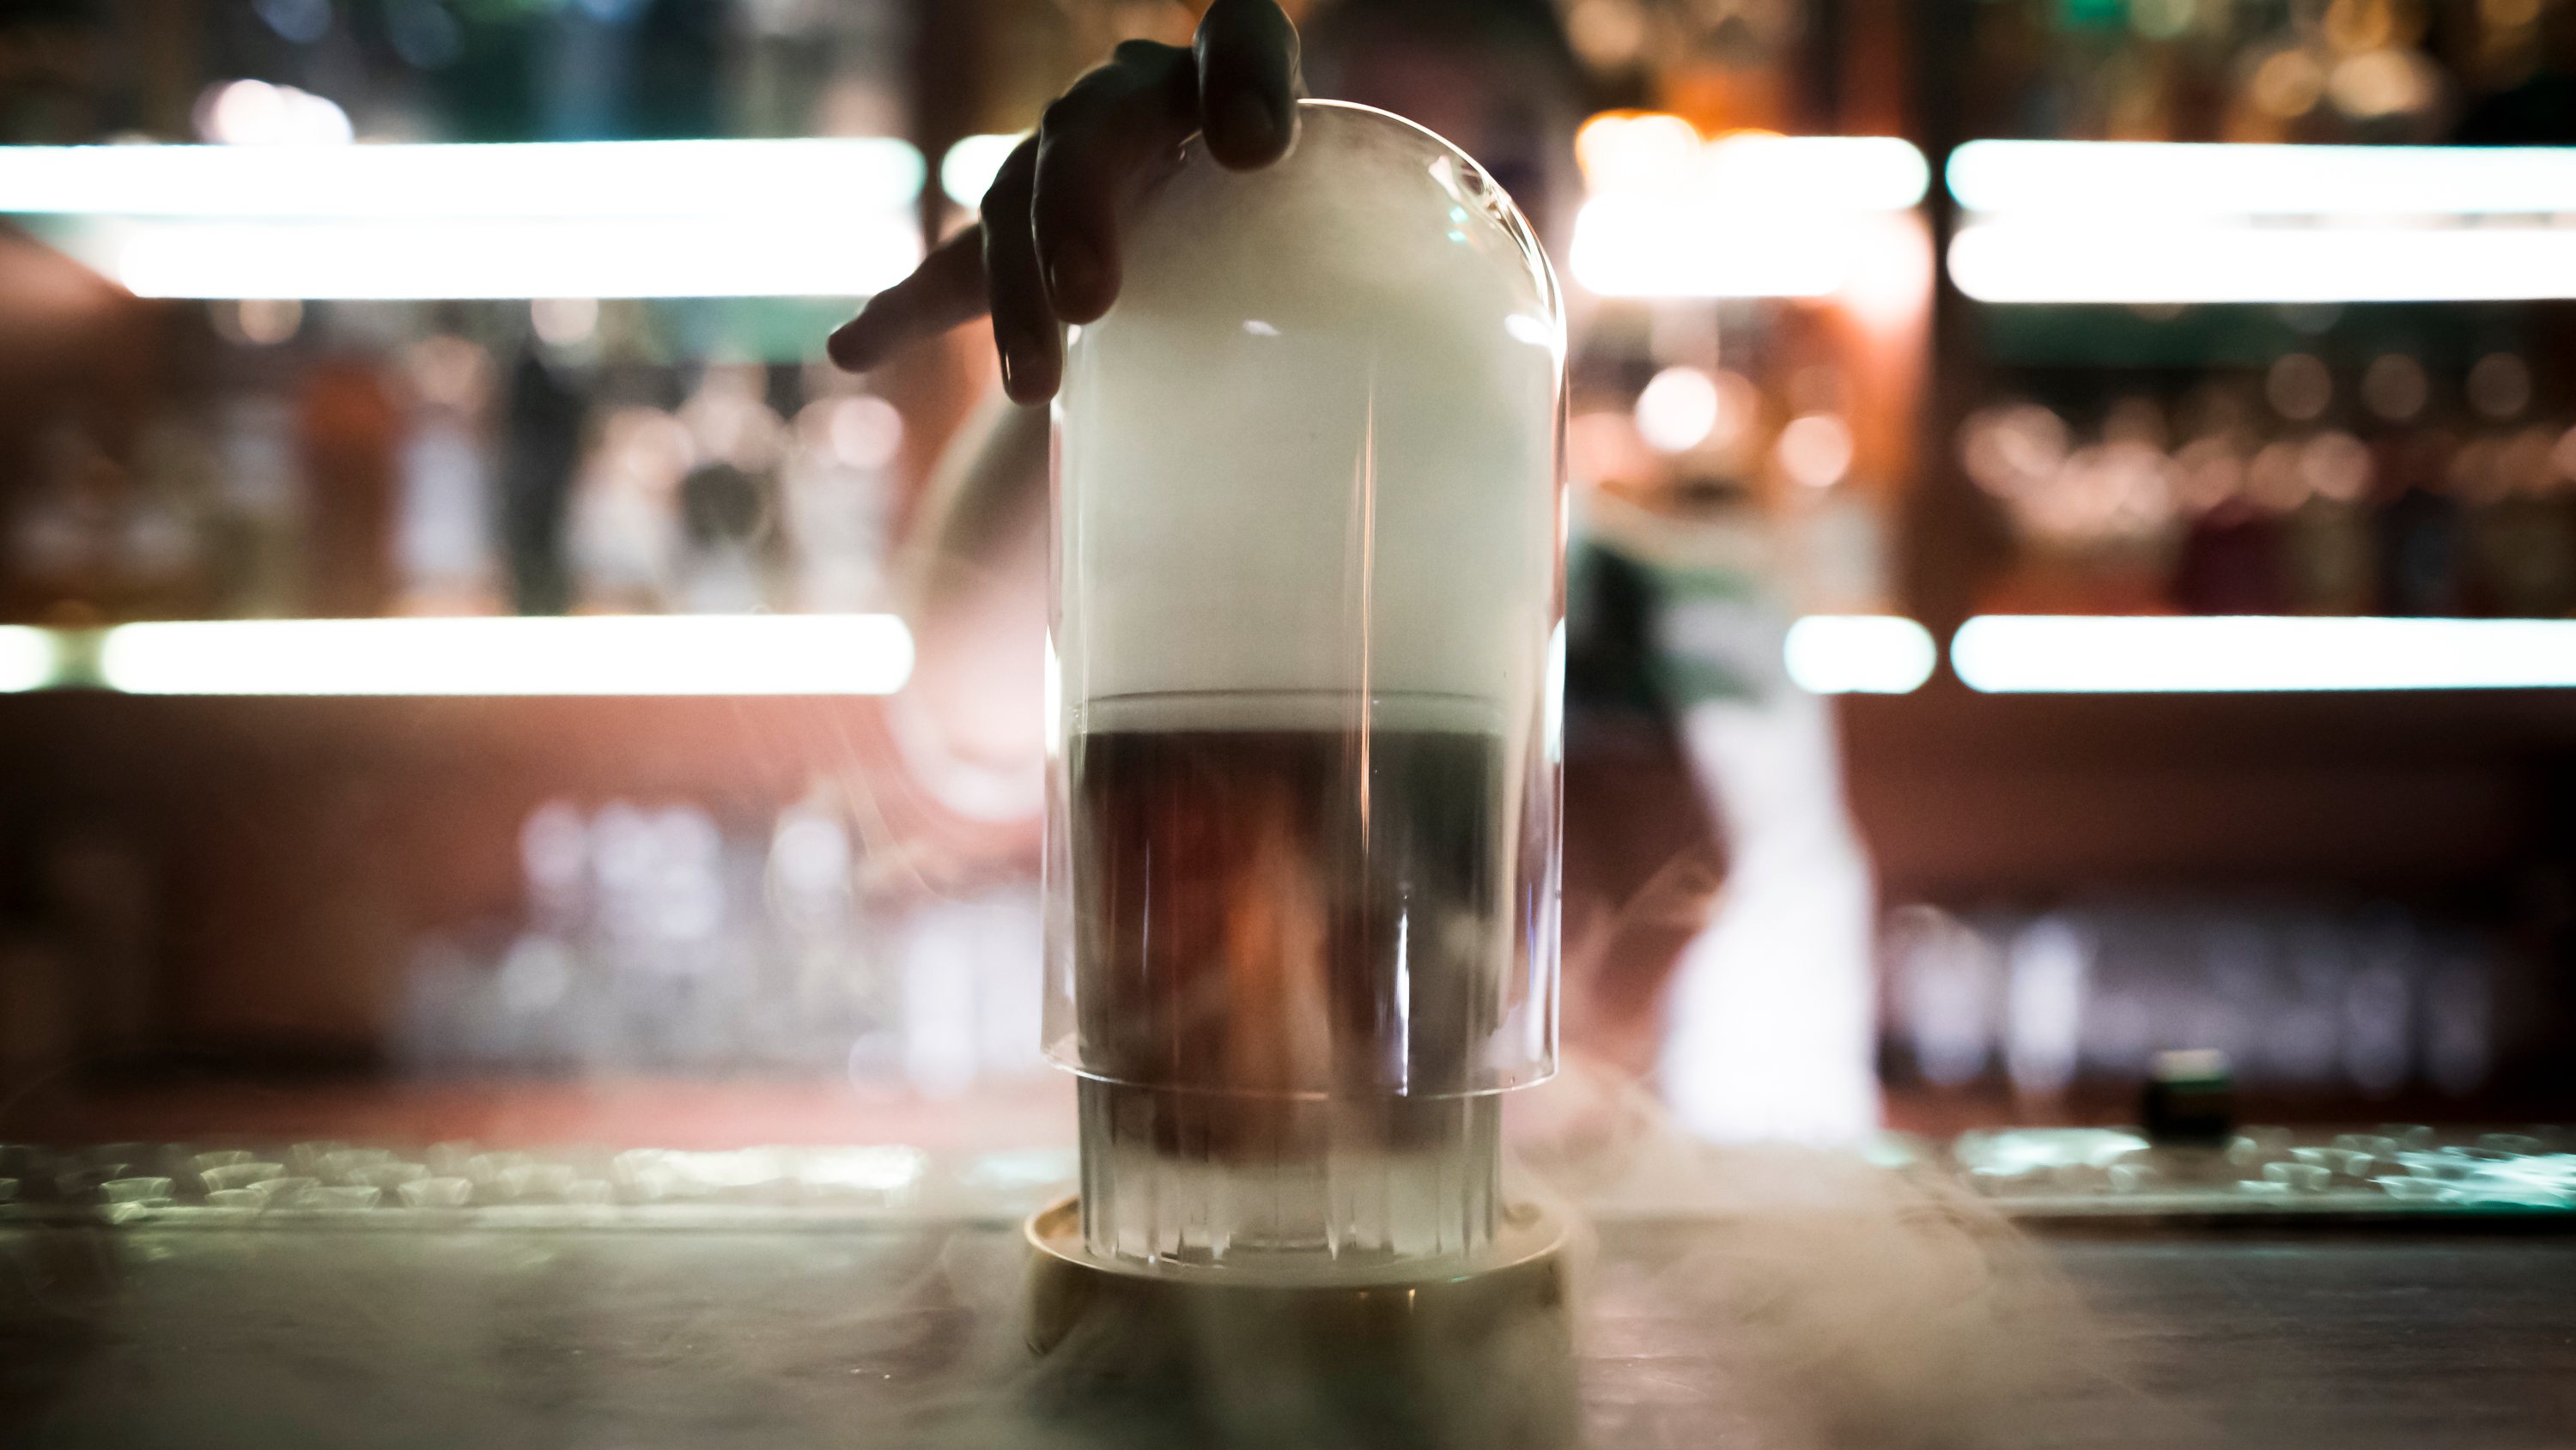 Reportagem no Bar “Red Frog”, que foi eleito um dos 50 melhores bares do mundo. Este bar é conhecido pelos seus cocktails. Spiced Rusty Cheery Lisboa, 15 de Setembro de 2022. FILIPE AMORIM/OBSERVADOR